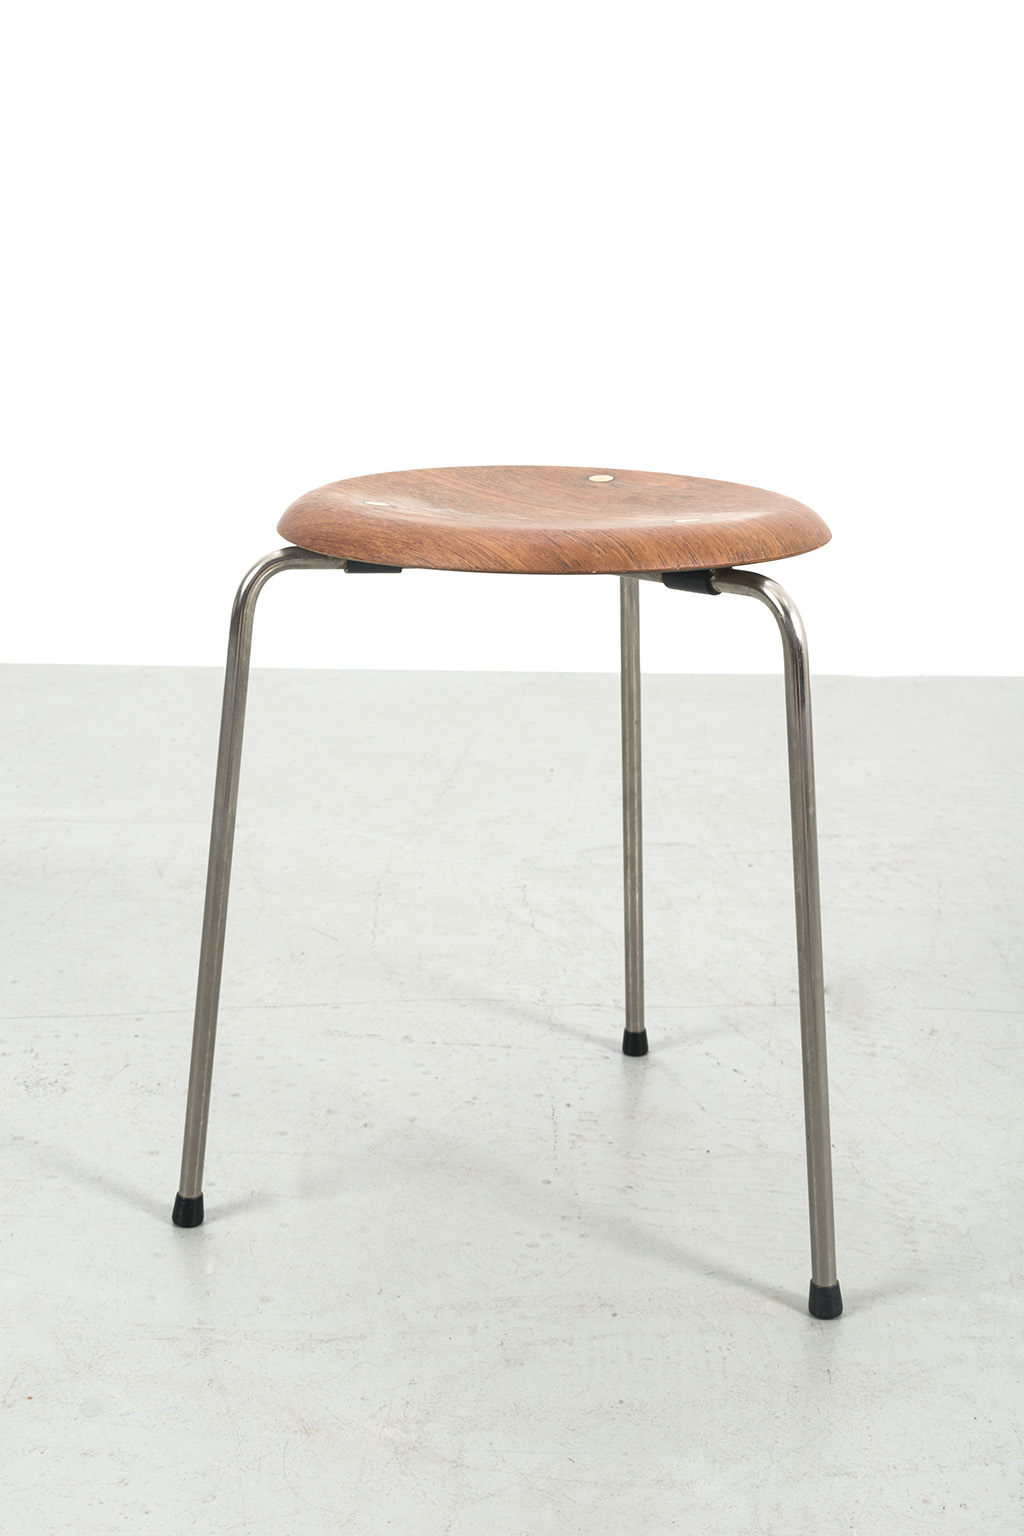 ‘Dot’ stool by Arne Jacobsen for Fritz Hansen